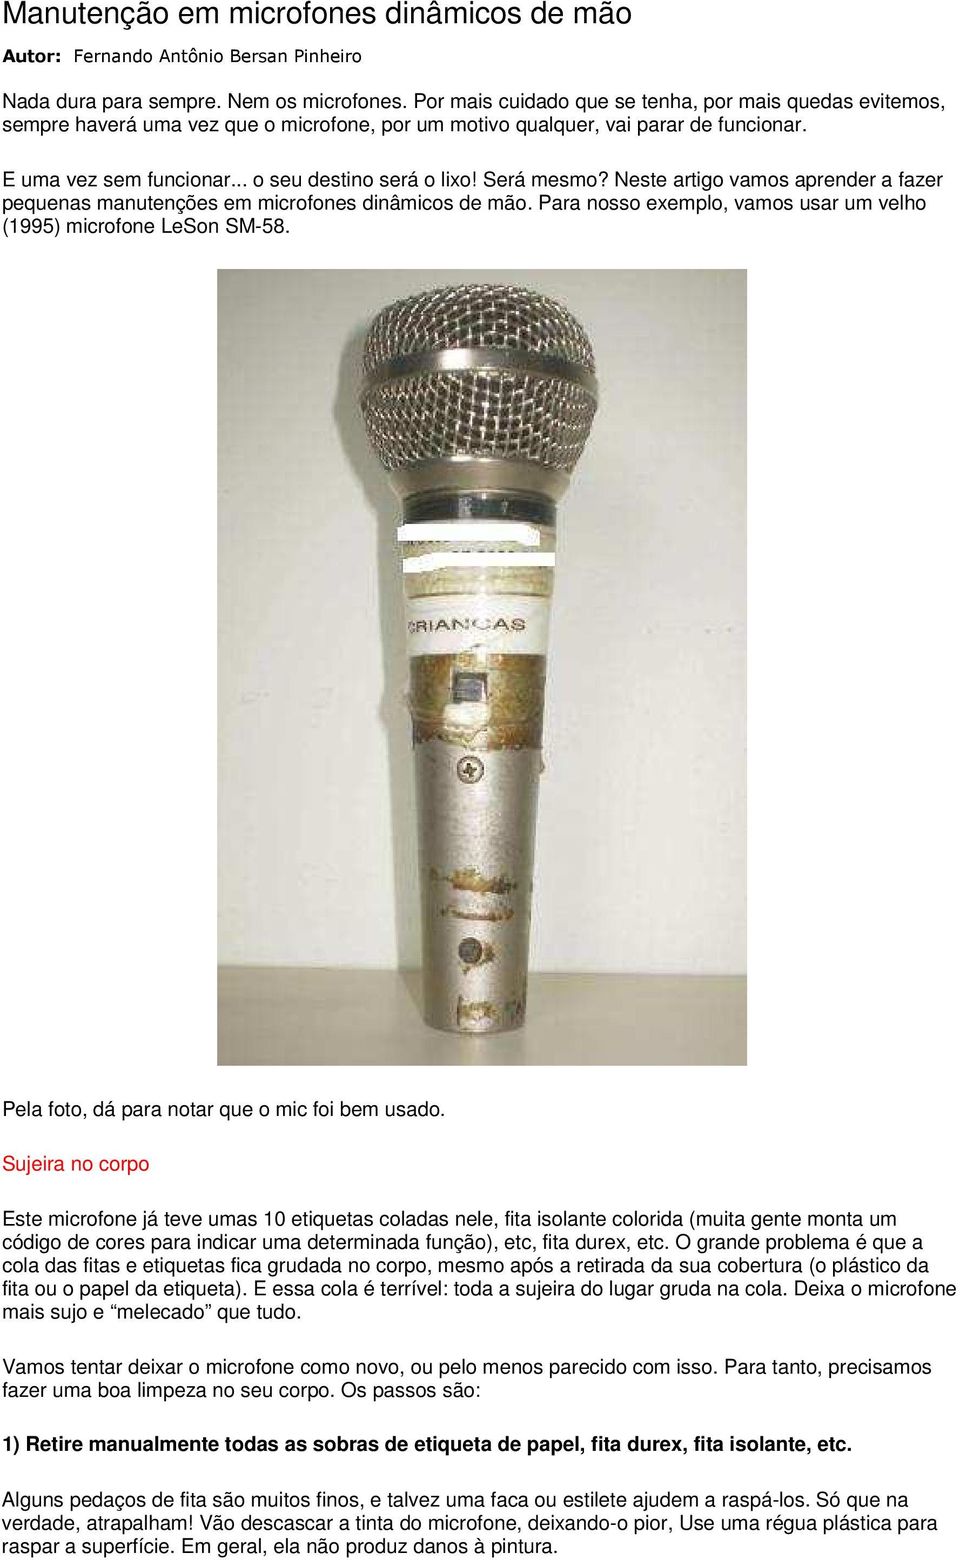 Manutenção em microfones dinâmicos de mão - PDF Free Download